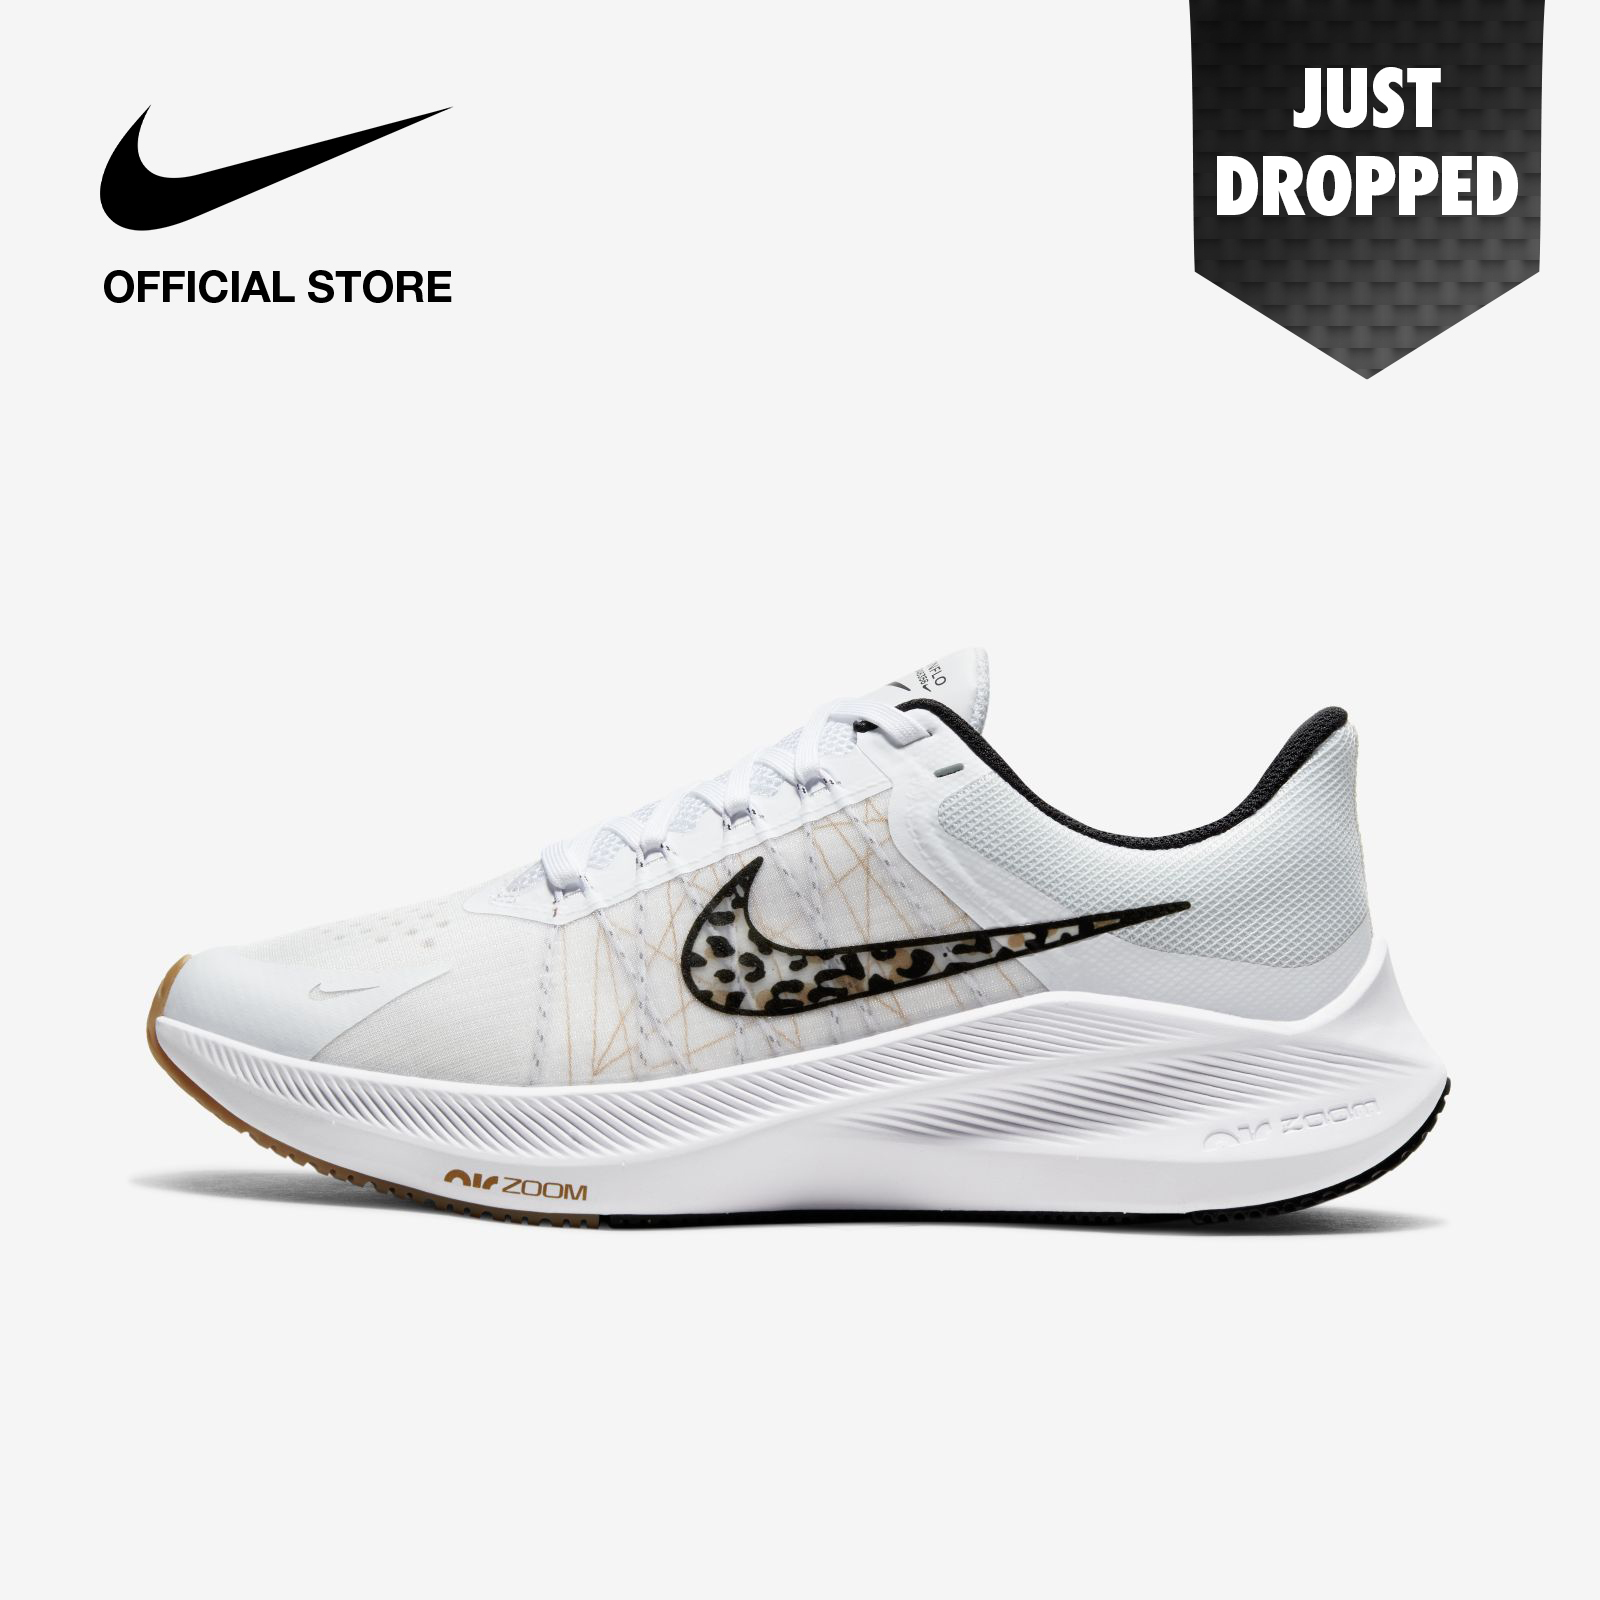 Nike Women's Winflo 8 Premium Running Shoes - White ไนกี้ รองเท้าวิ่งผู้หญิง วินโฟลว 8 พรีเมี่ยม - สีขาว